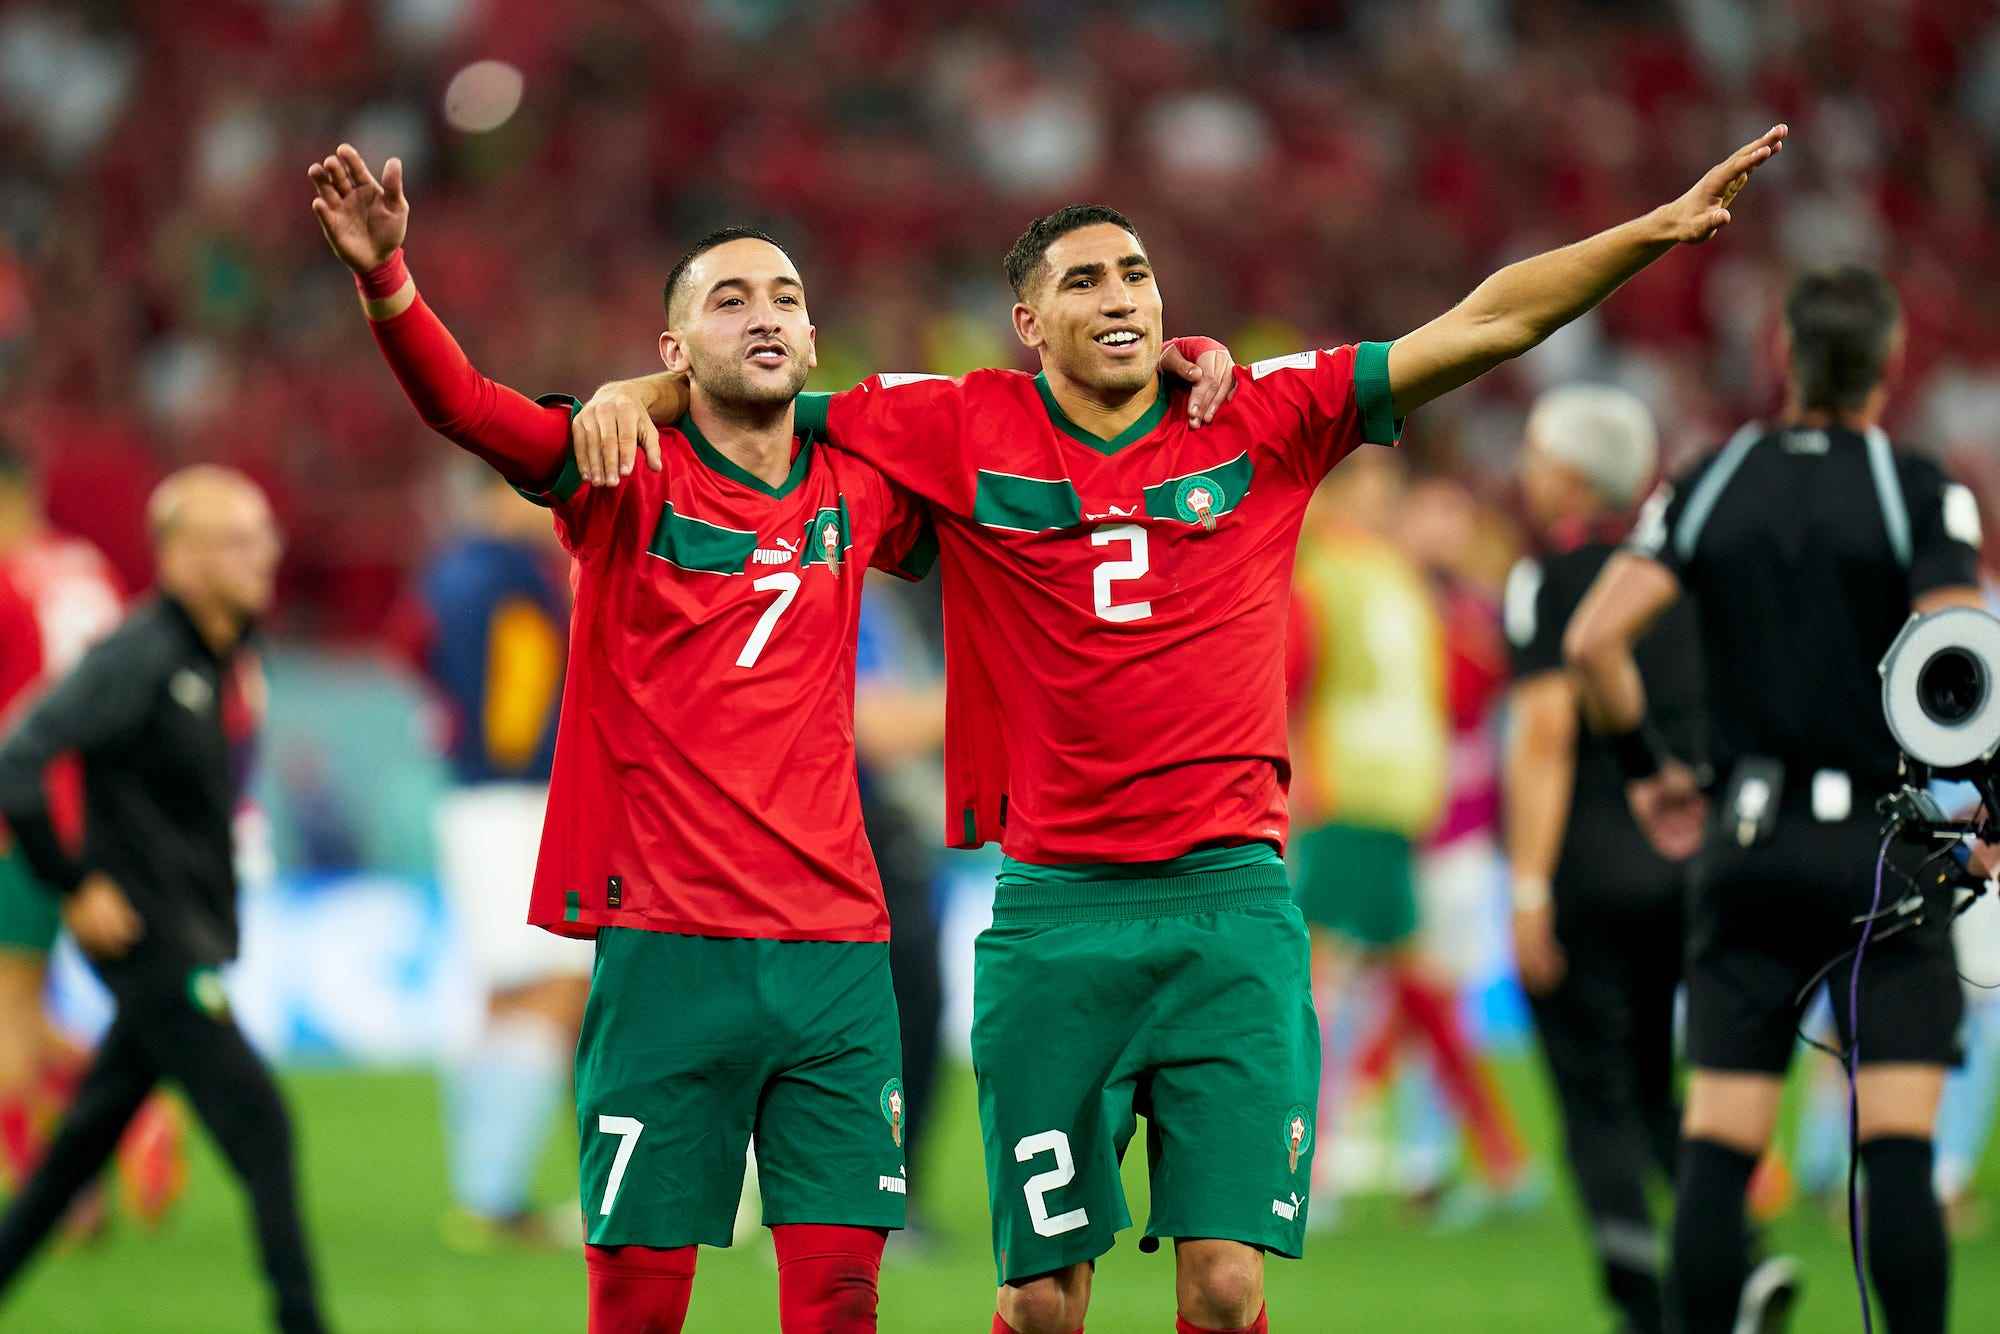 Hakim Ziyech und Achraf Hakimi aus Marokko feiern nach dem Sieg des Teams während des Achtelfinalspiels der FIFA Fussball-Weltmeisterschaft Katar 2022 zwischen Marokko und Spanien im Education City Stadium am 06. Dezember 2022 in Al Rayyan, Katar.